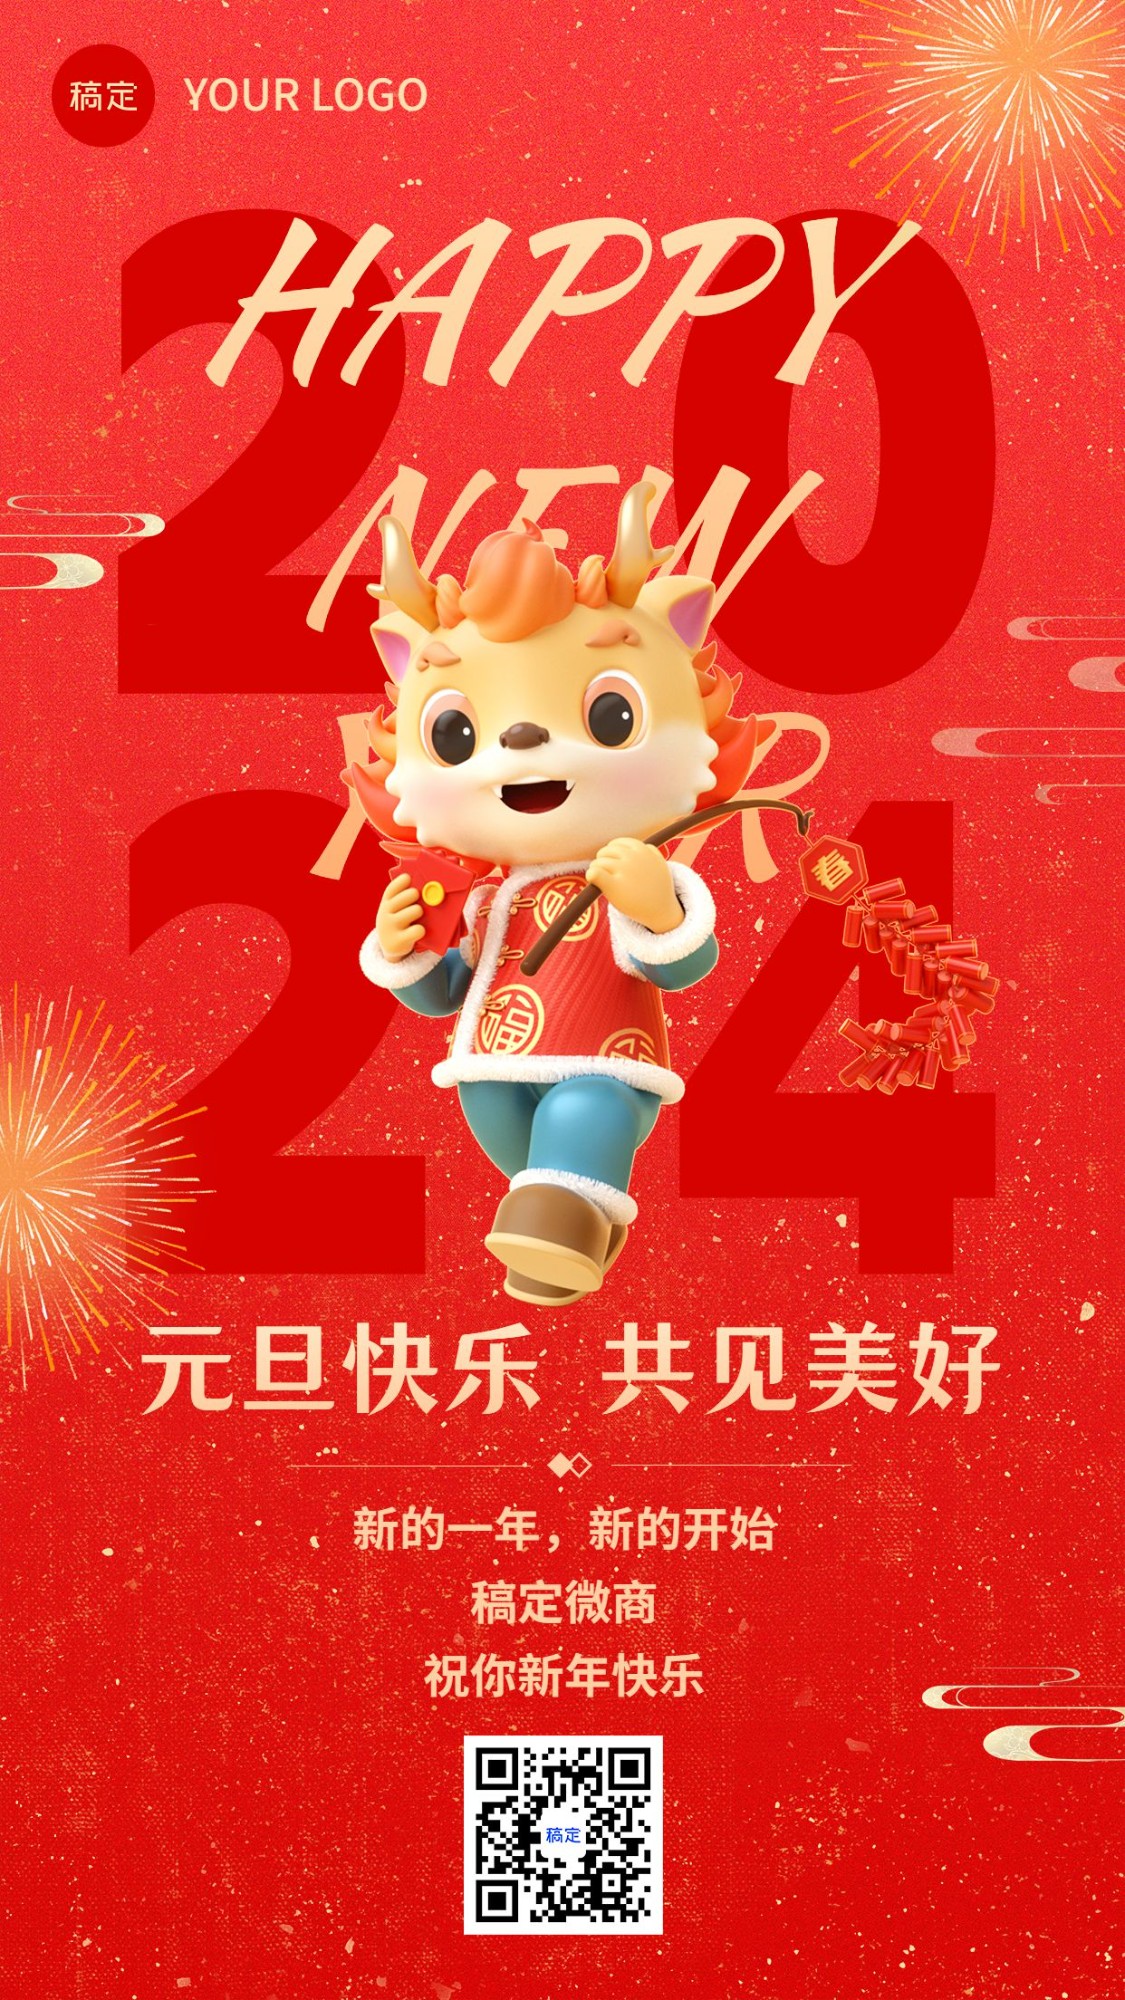 元旦新年微商节日祝福软3D龙竖版海报